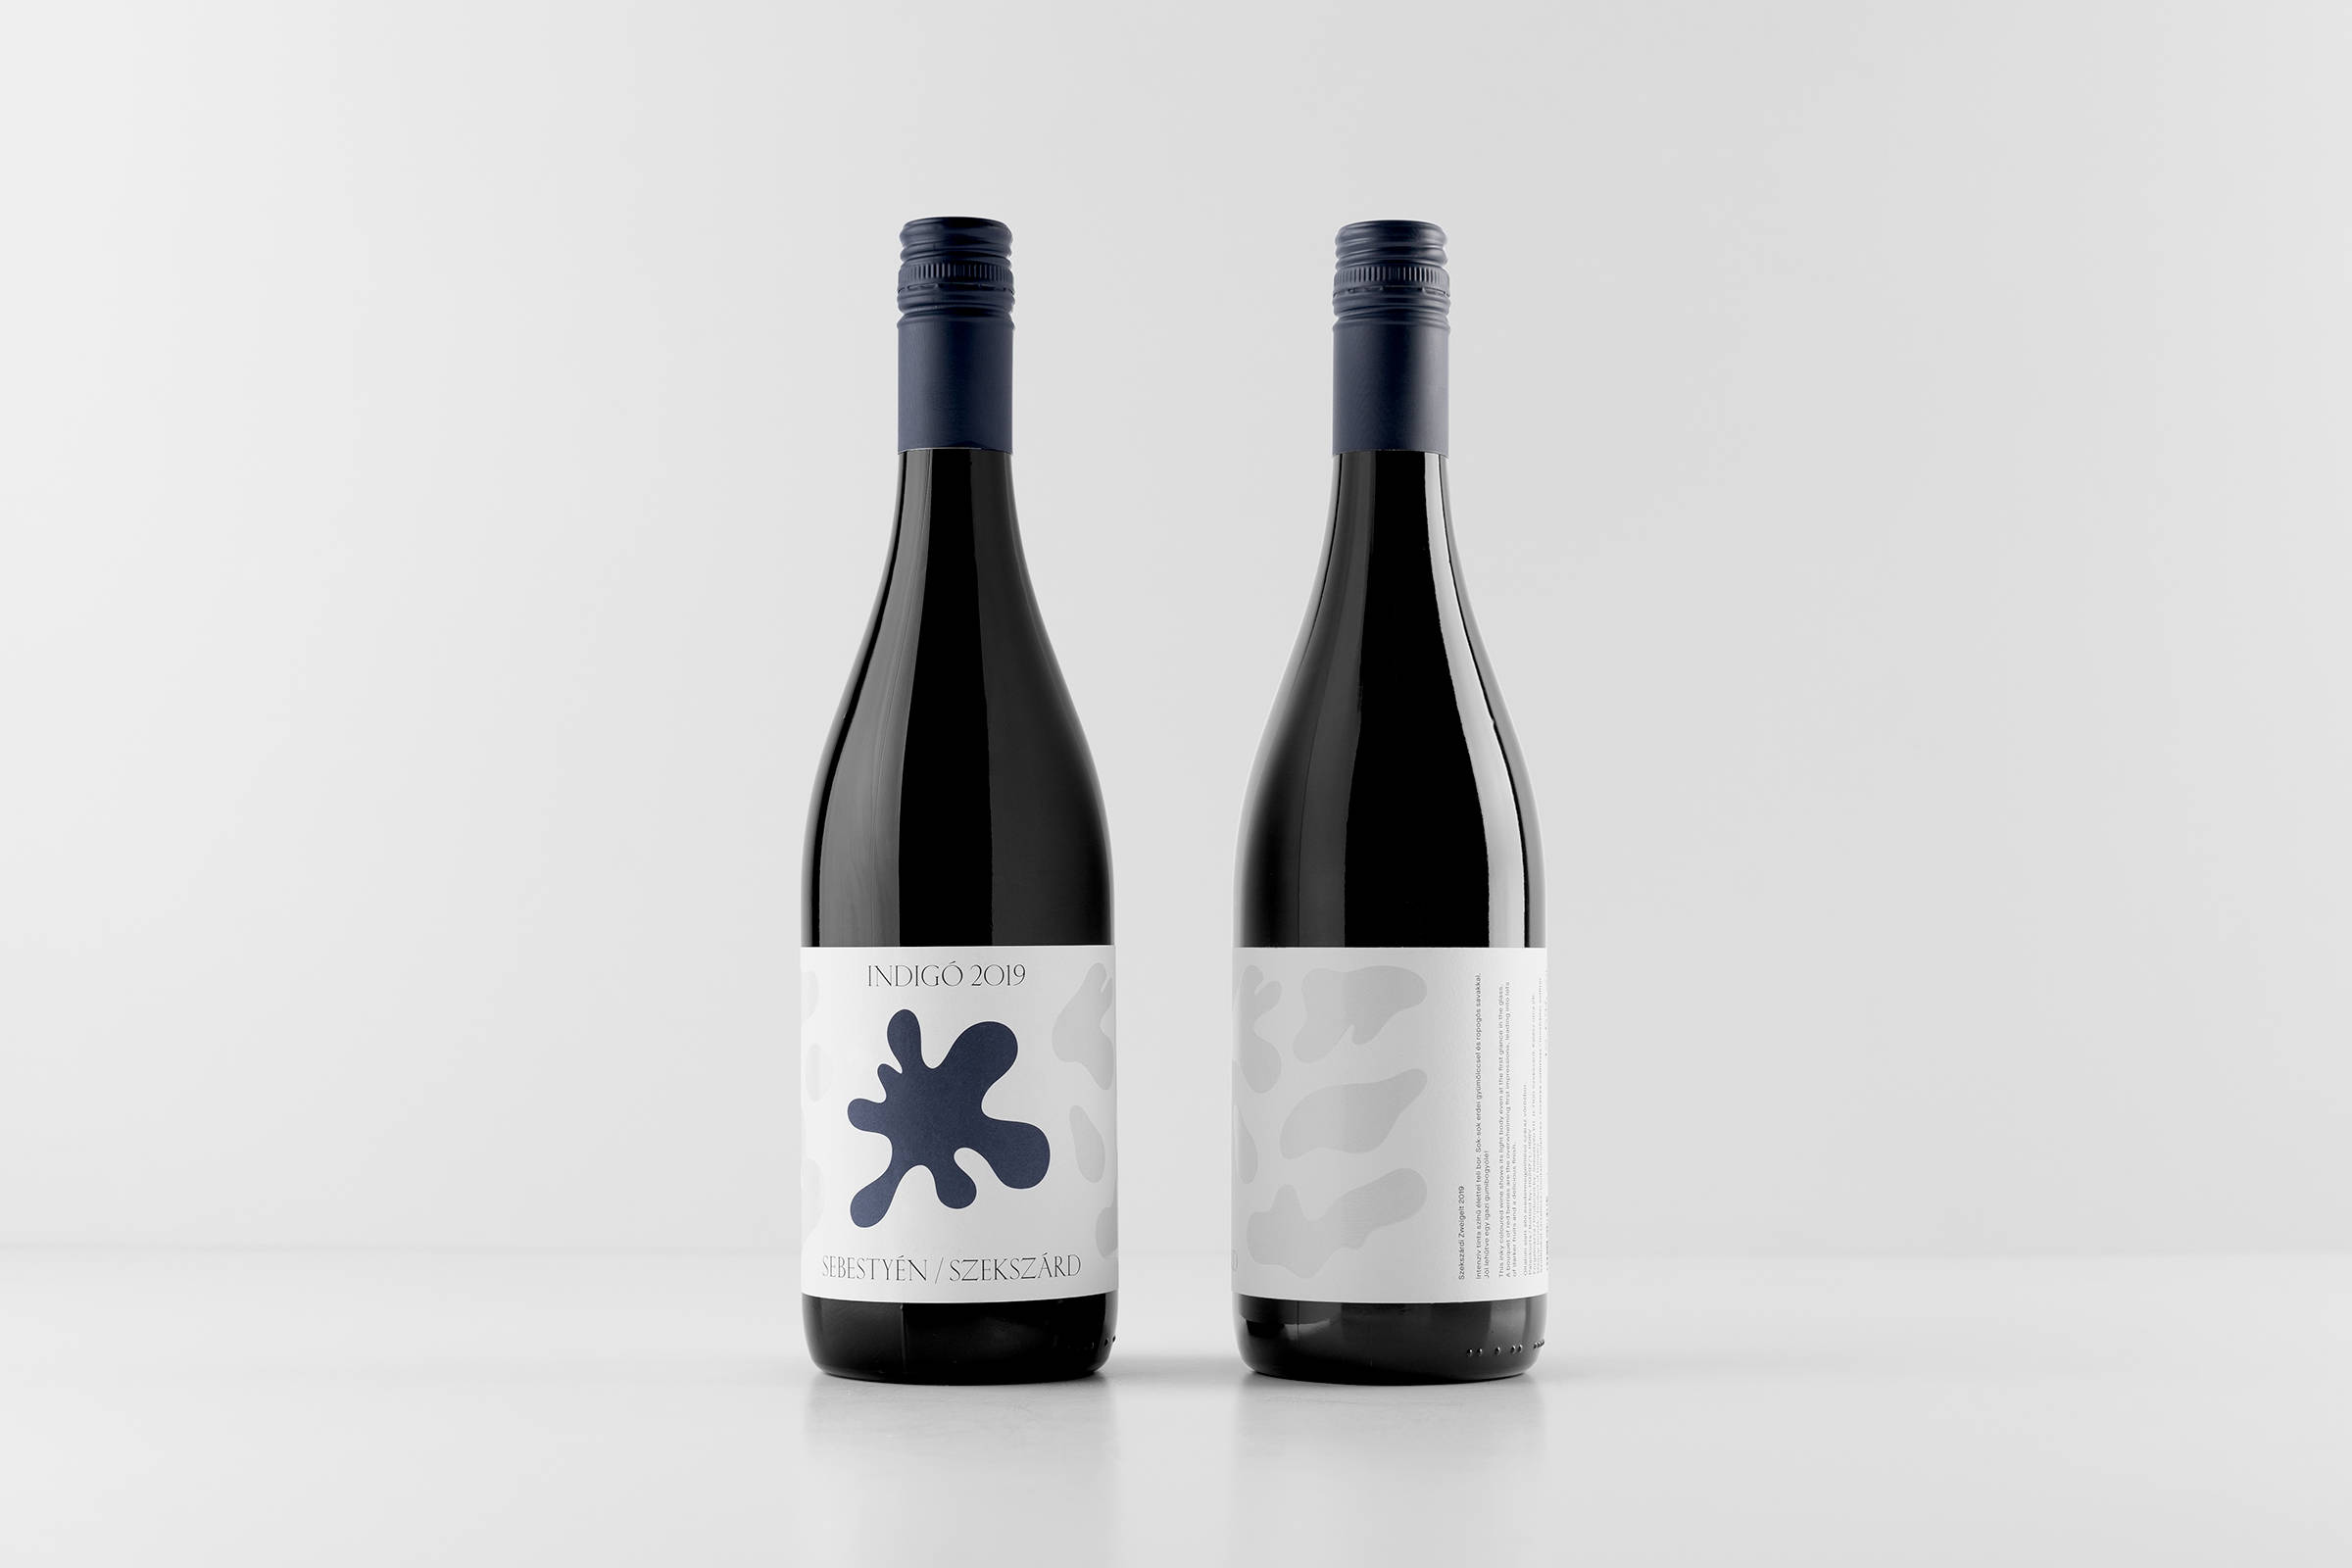 抽象化设计风格与独特形状相互搭配的葡萄酒包装设计